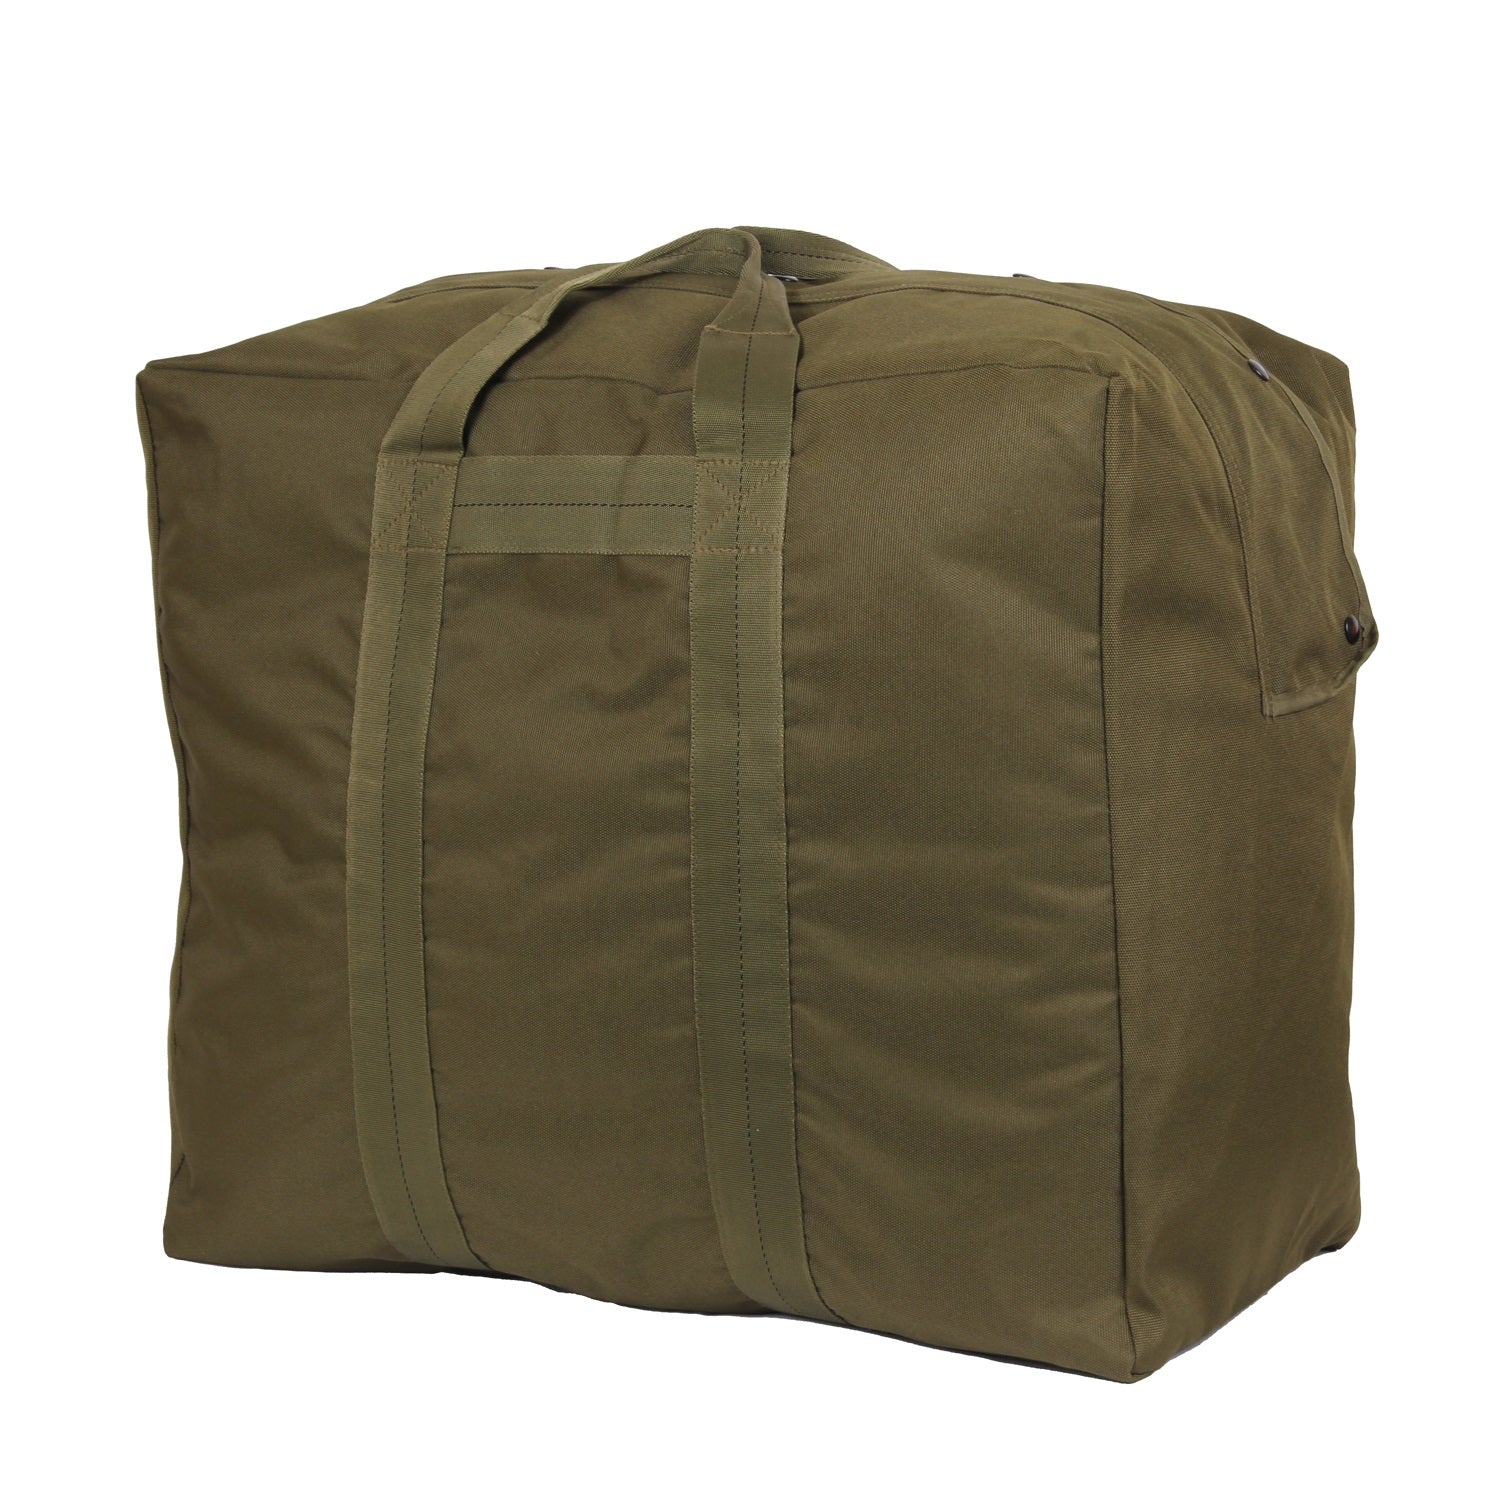 Rothco Enhanced Aviator Kit Bag Olive Drab